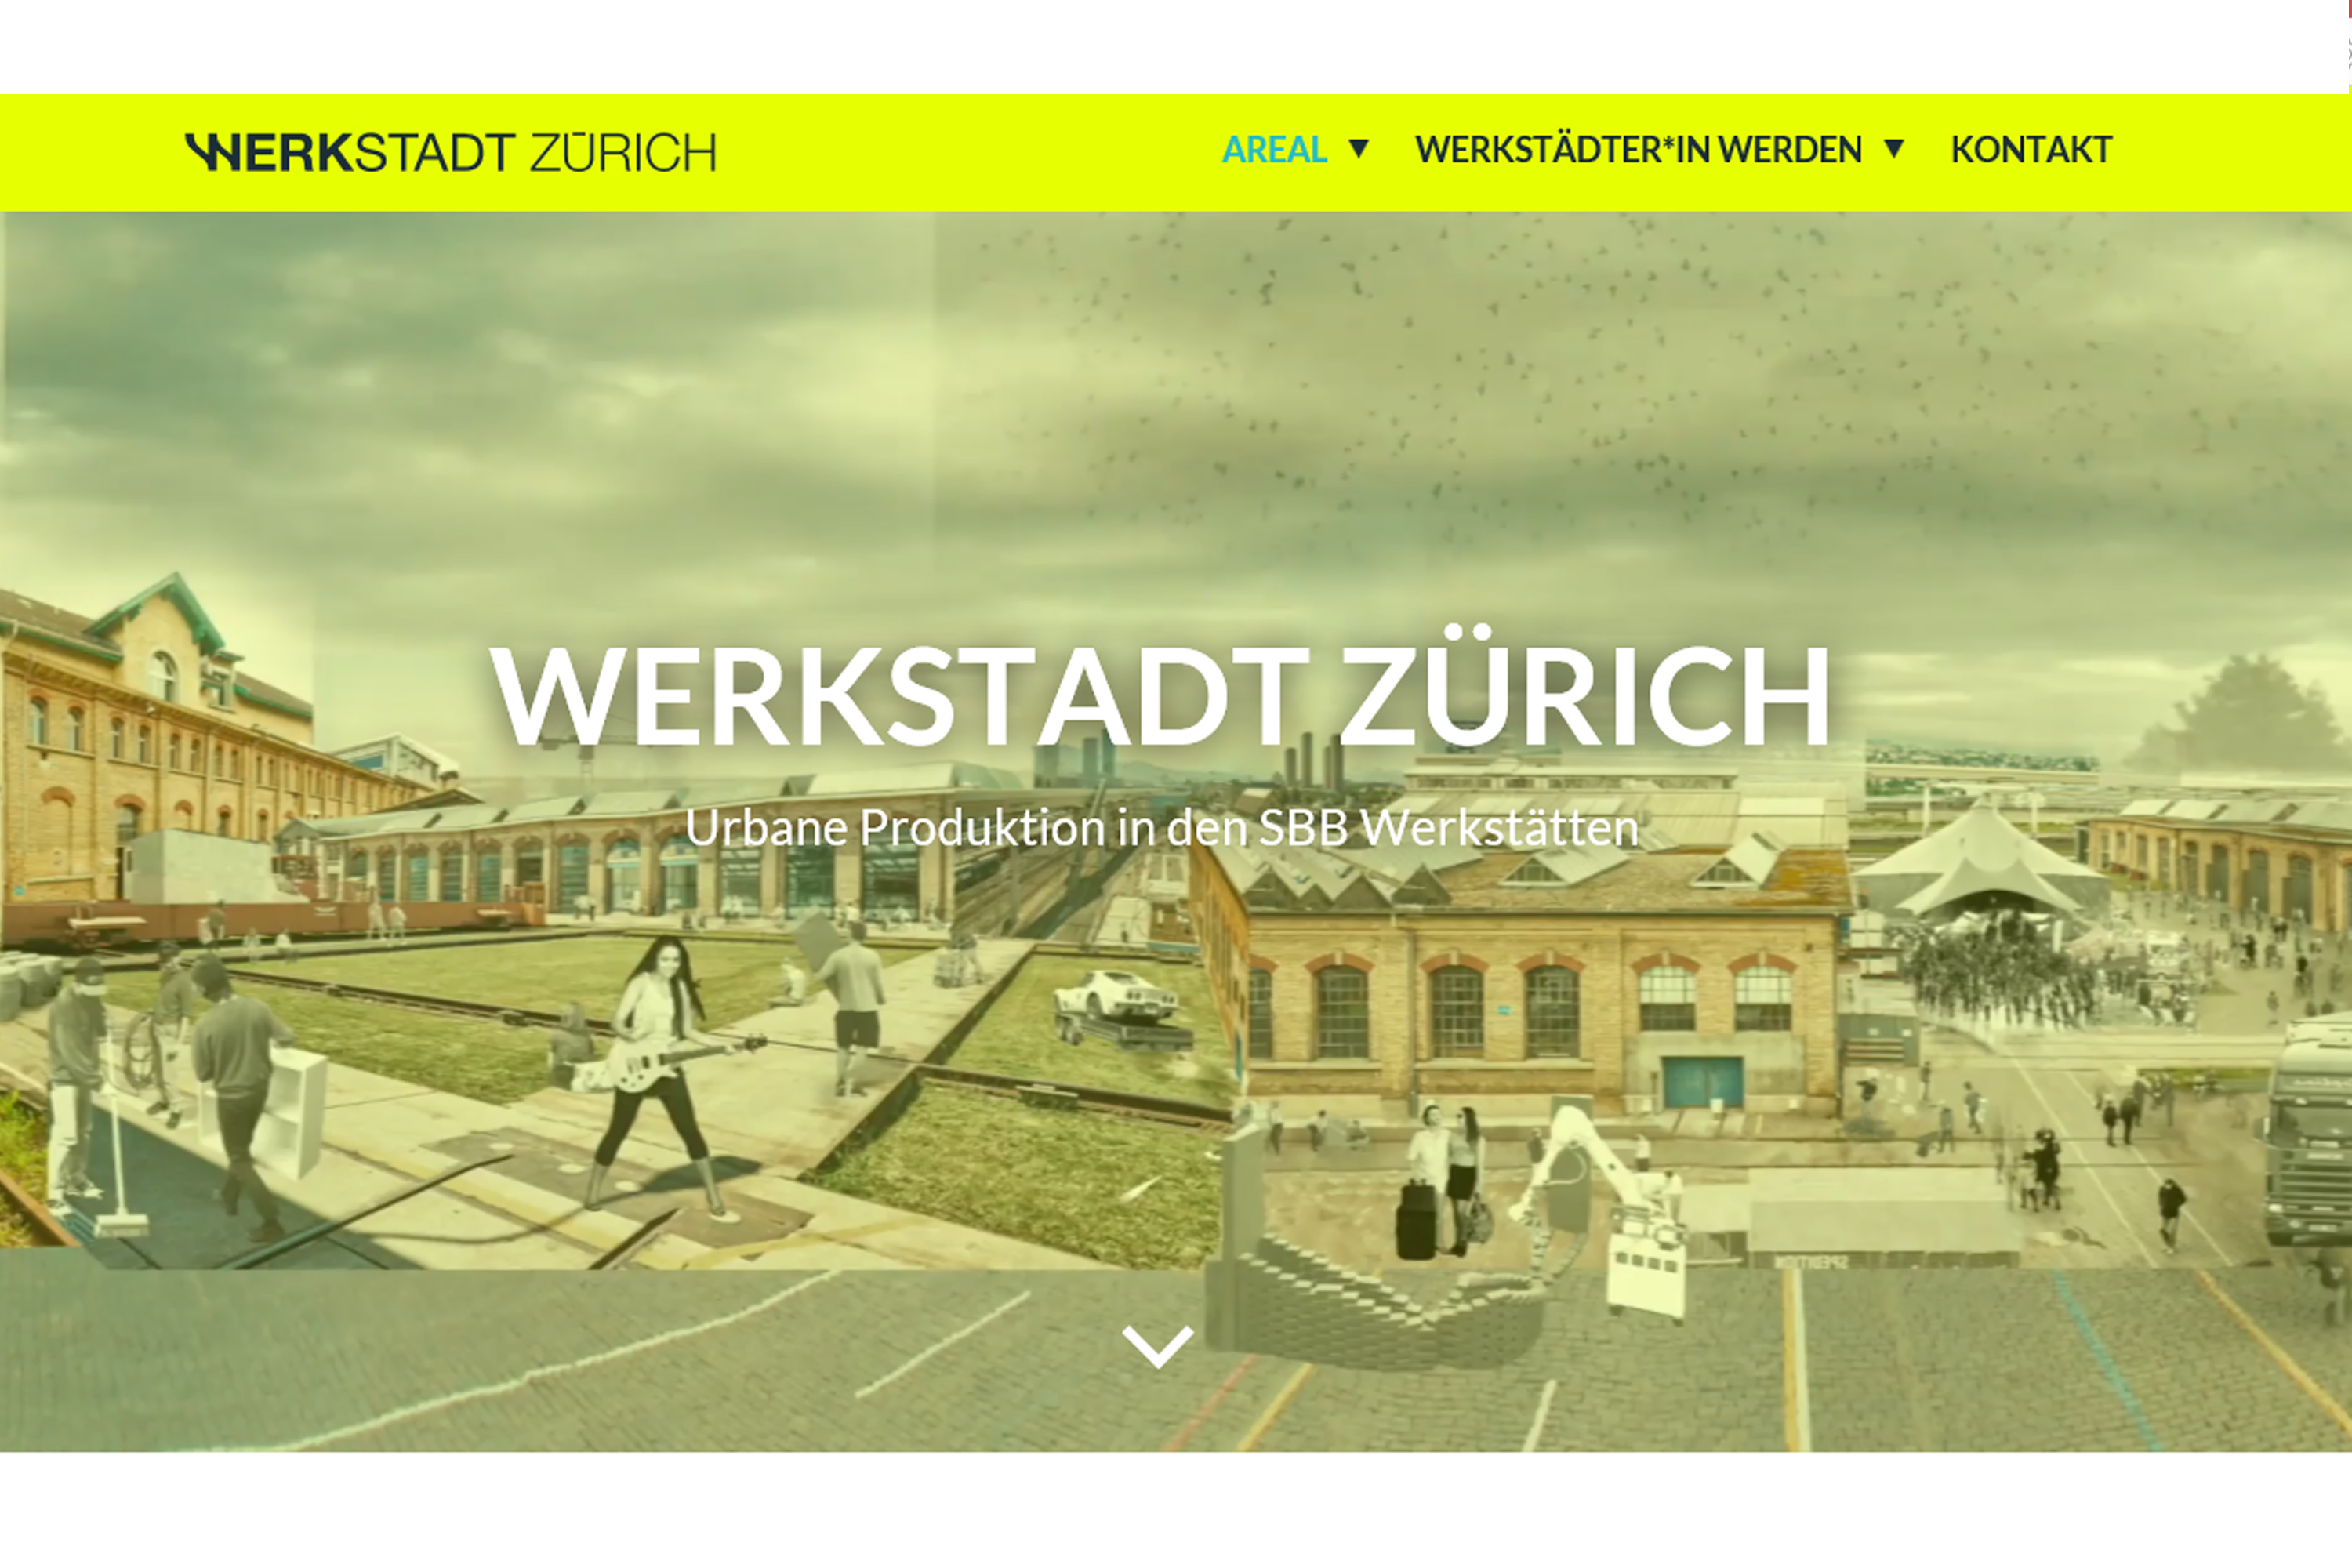 Project launch: Werkstadt Zürich